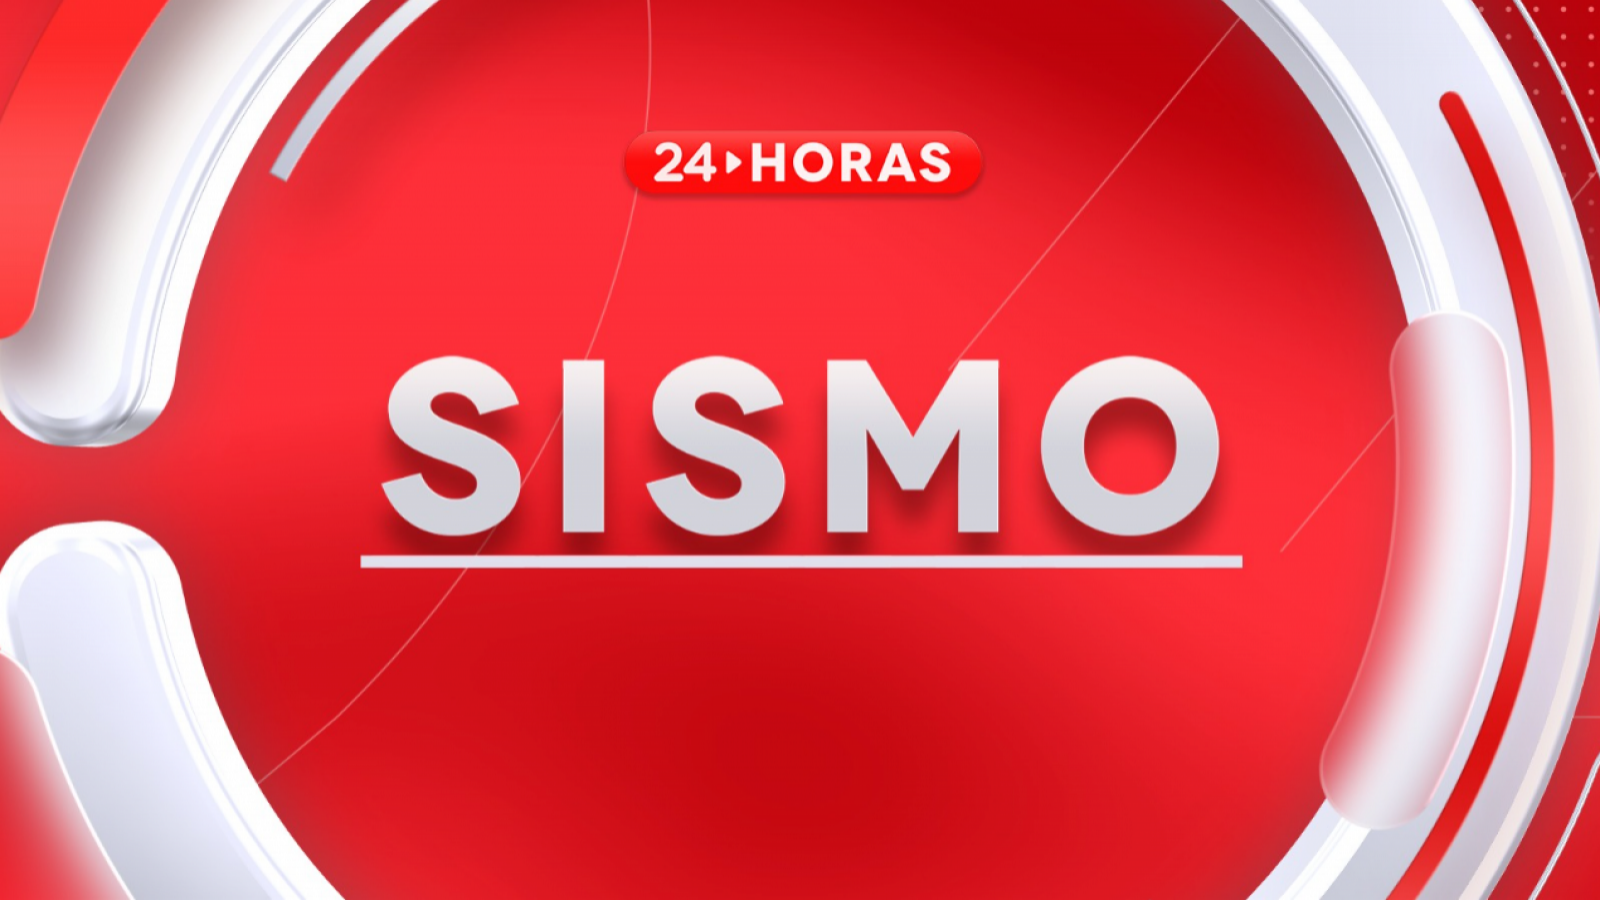 Últimos sismos en Chile conoce ACÁ el temblor de hoy 24horas